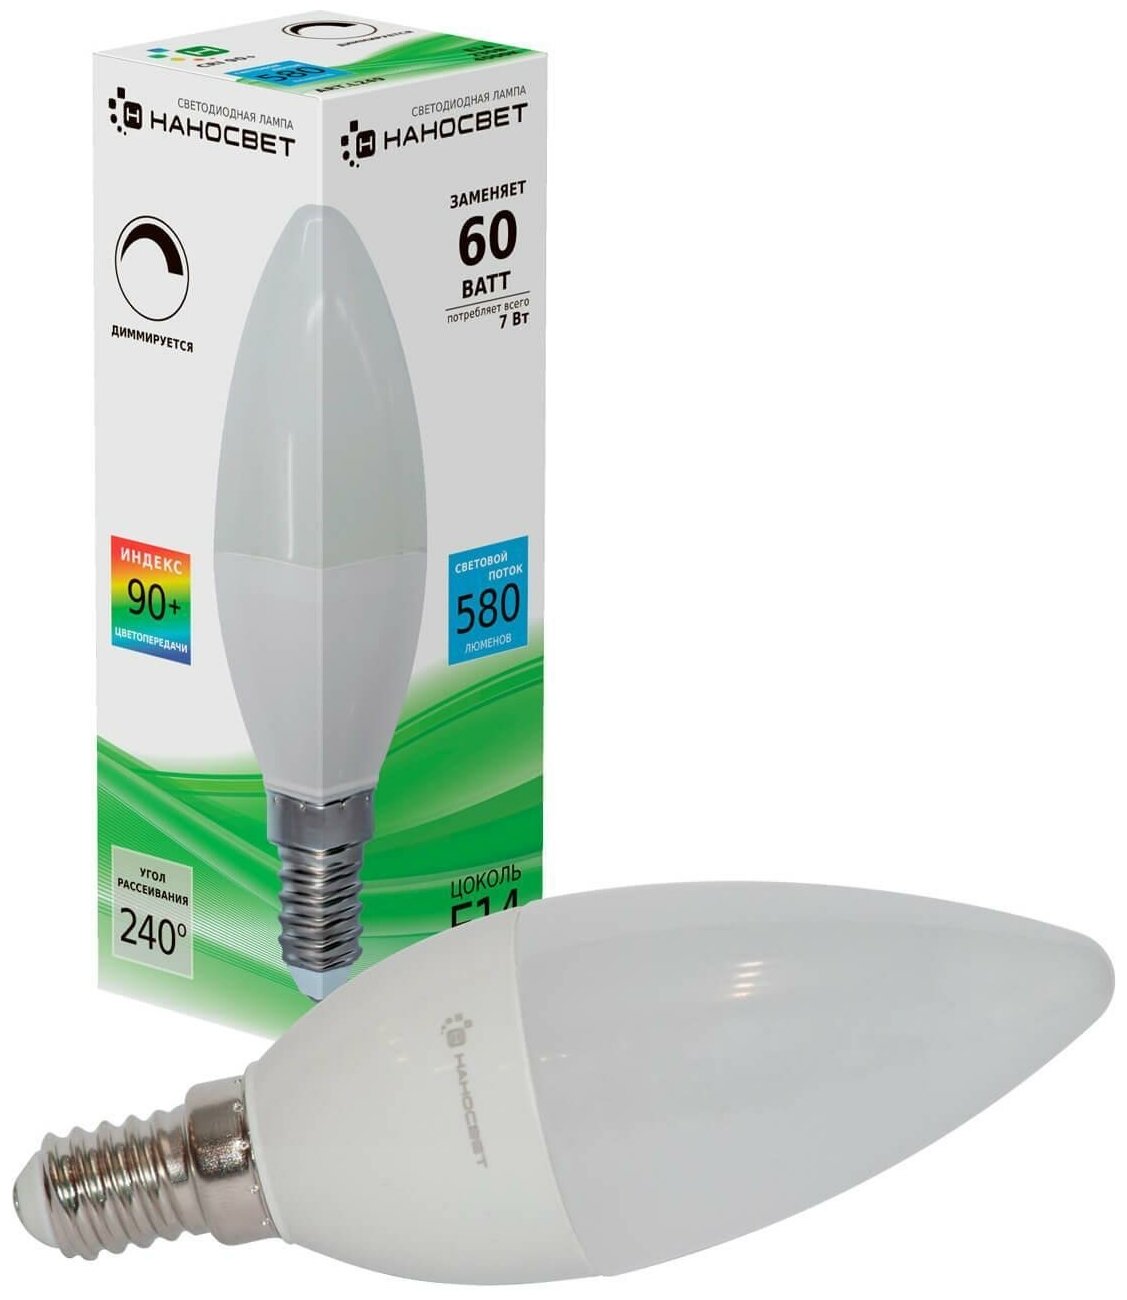 Наносвет Димм. светодиодная лампа LE-CD-D-7/E14/940,7Вт, свеча,580 лм,Е14, 4000К, Ra90, L249